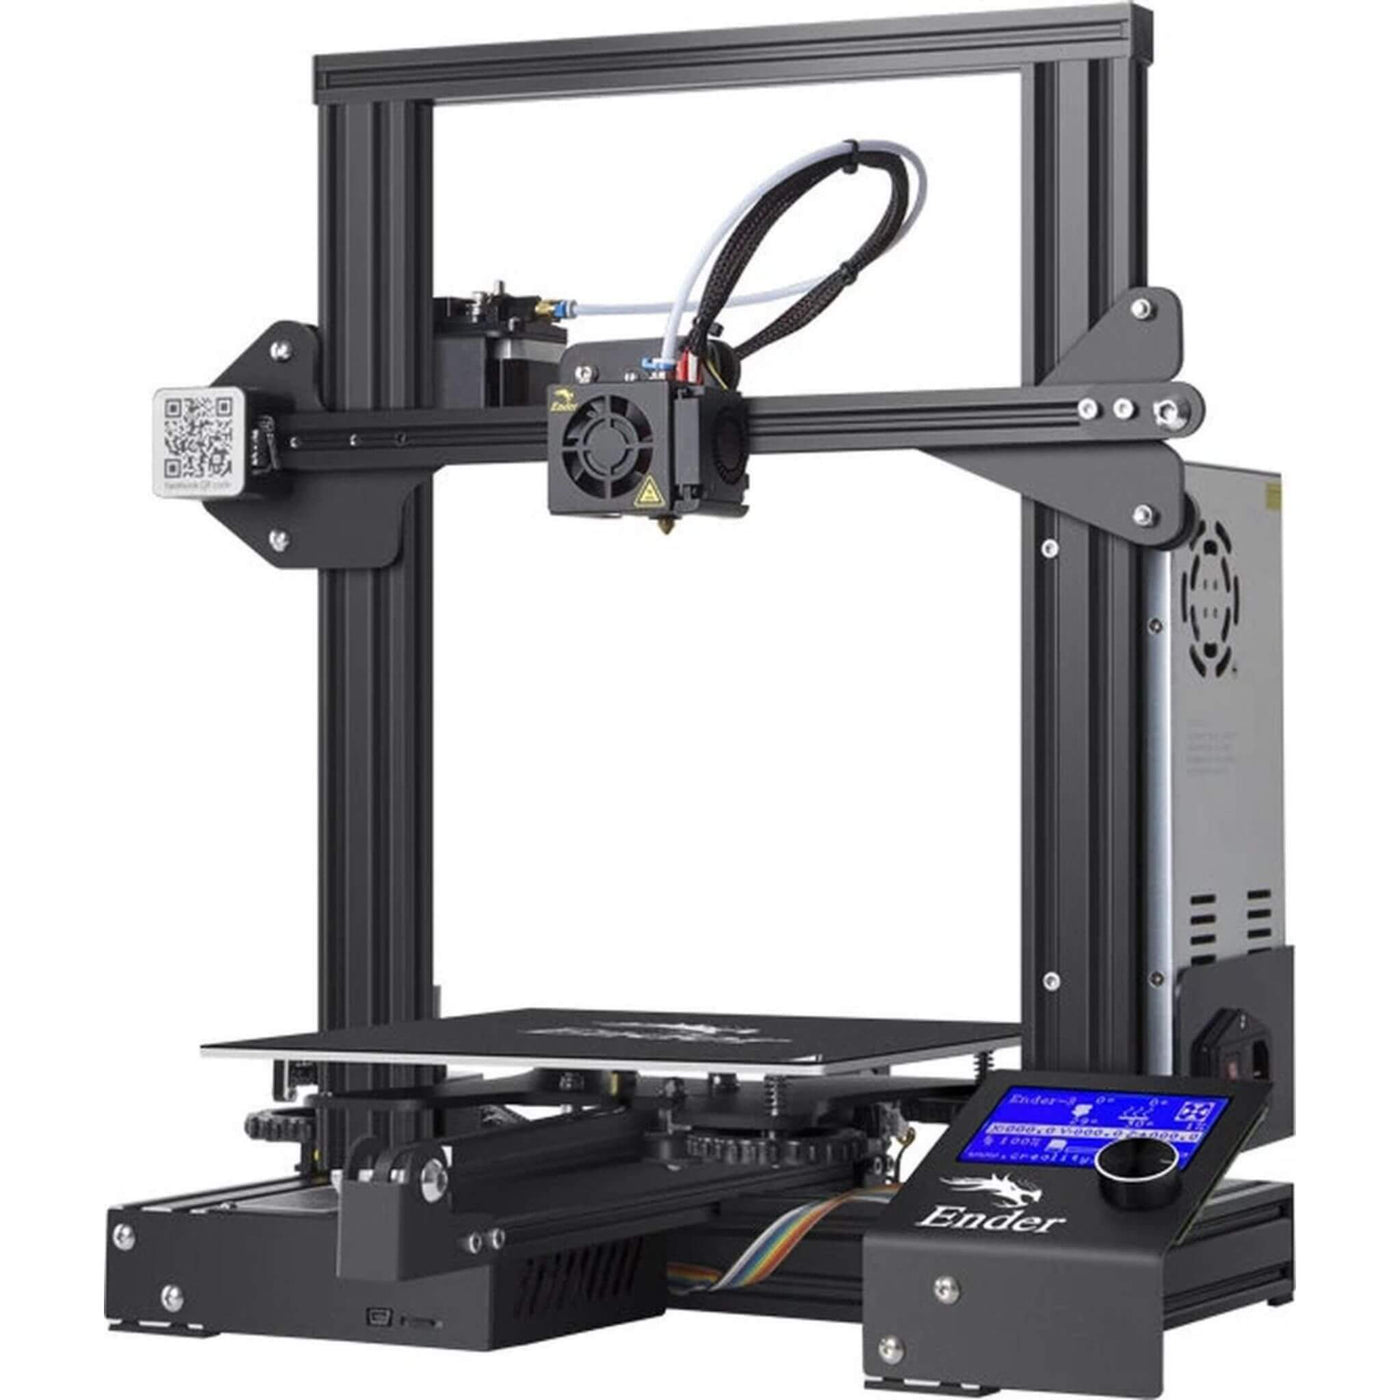 Creality Ender 3 - 3D Printer - Beginners